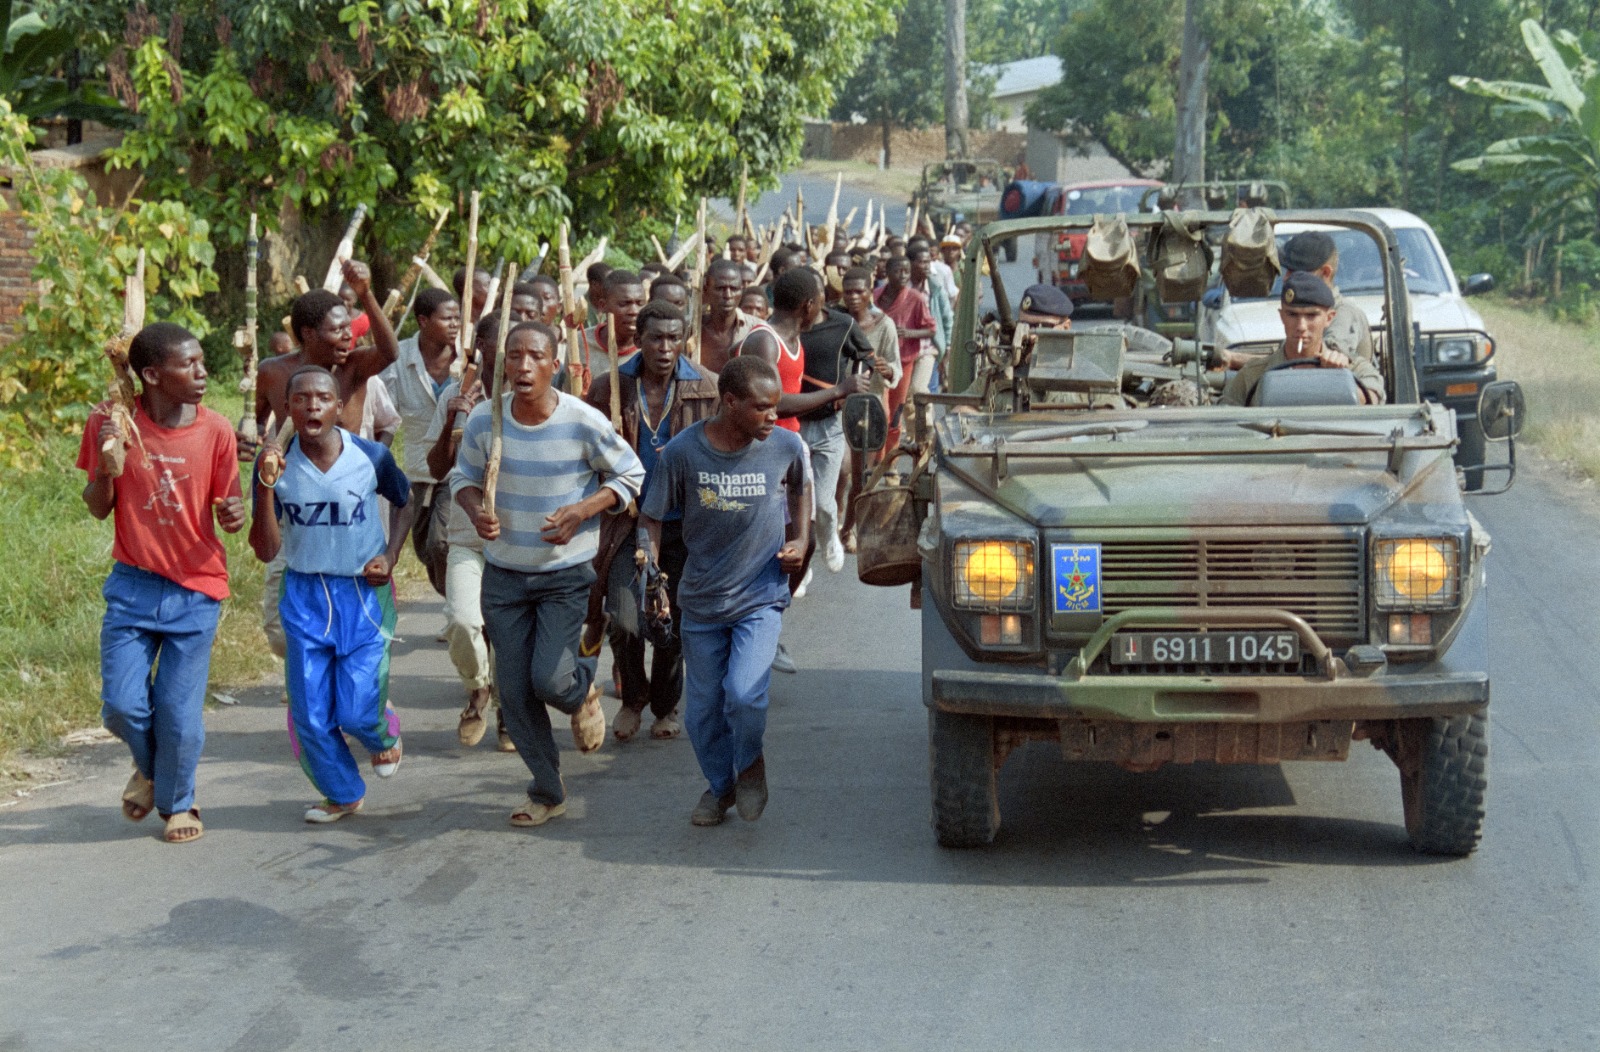 جنود فرنسيون خلال دورية يمرون أمام قوات الهوتو في رواندا. 27 يونيو 1994